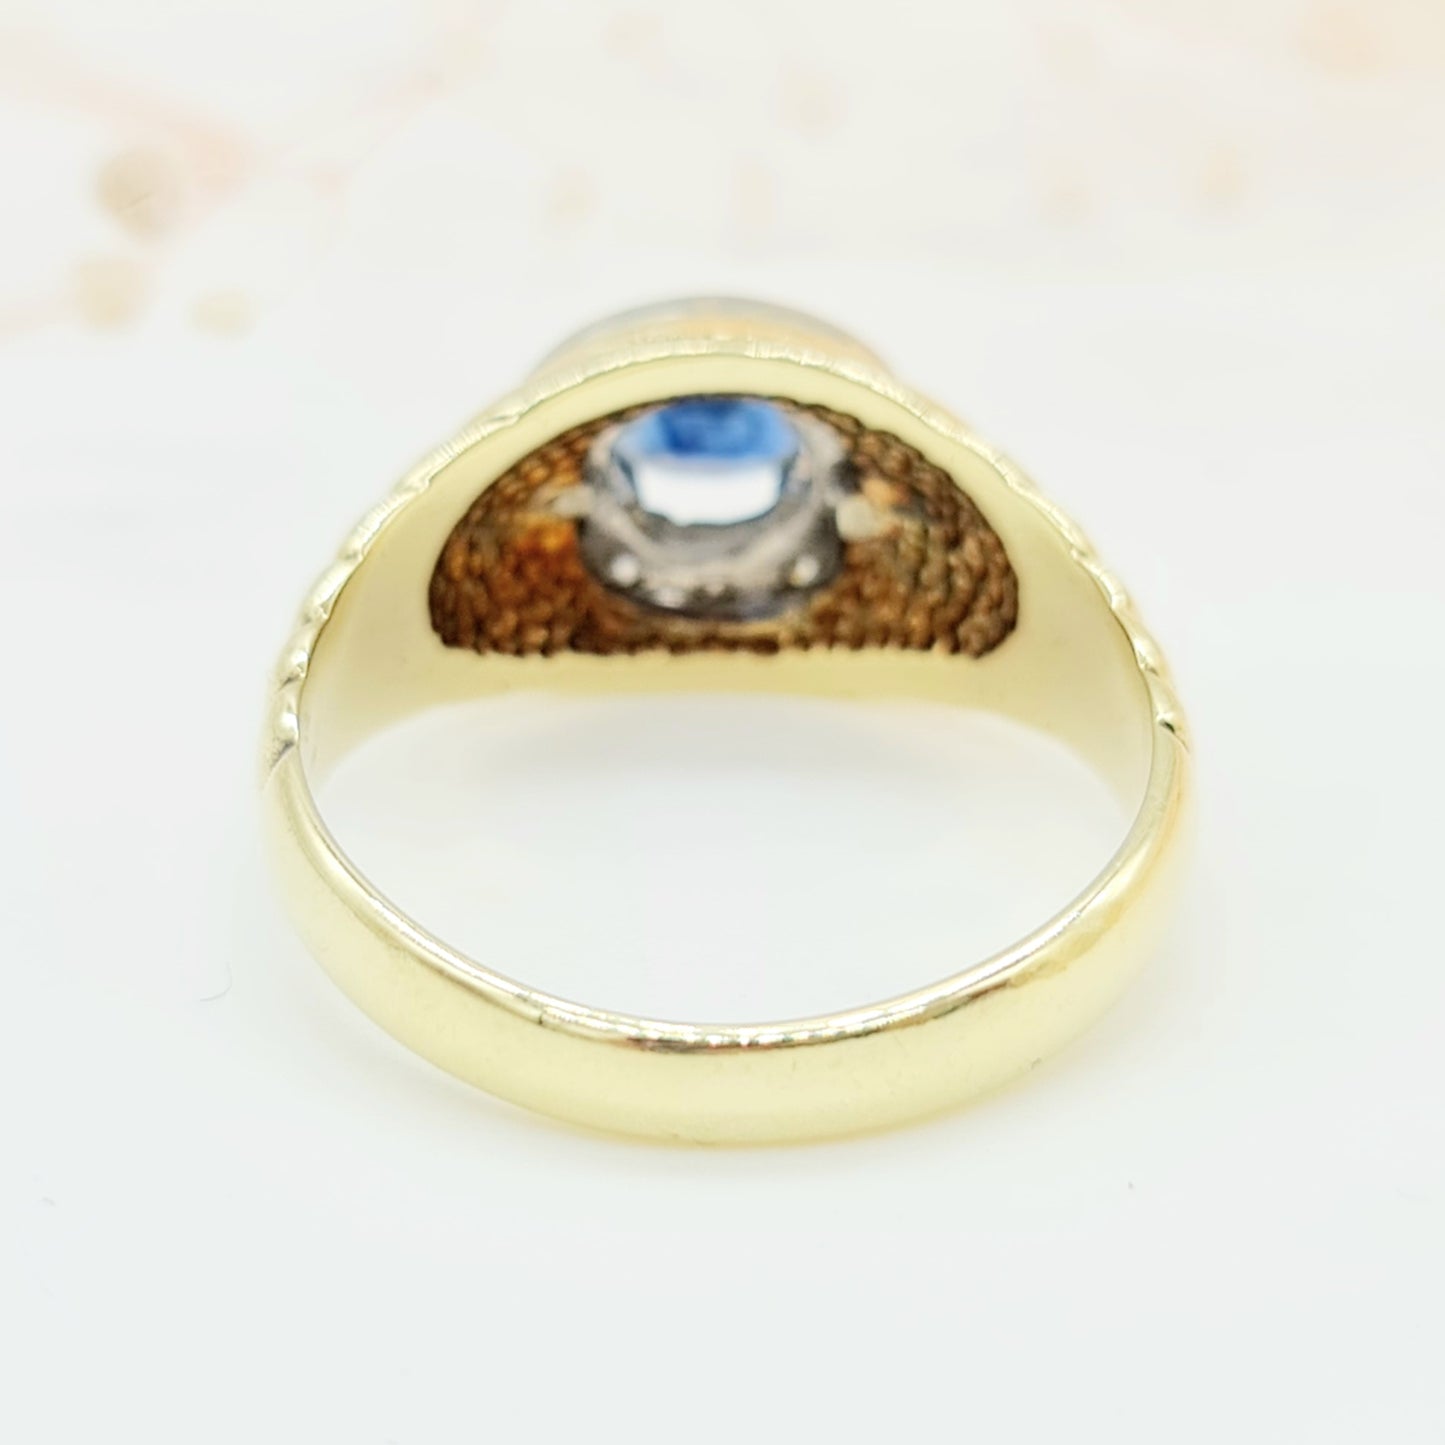 Vintage Ring mit ovalem Saphir umrandet von 10 Brillanten in 585er 14 kt Gelbgold